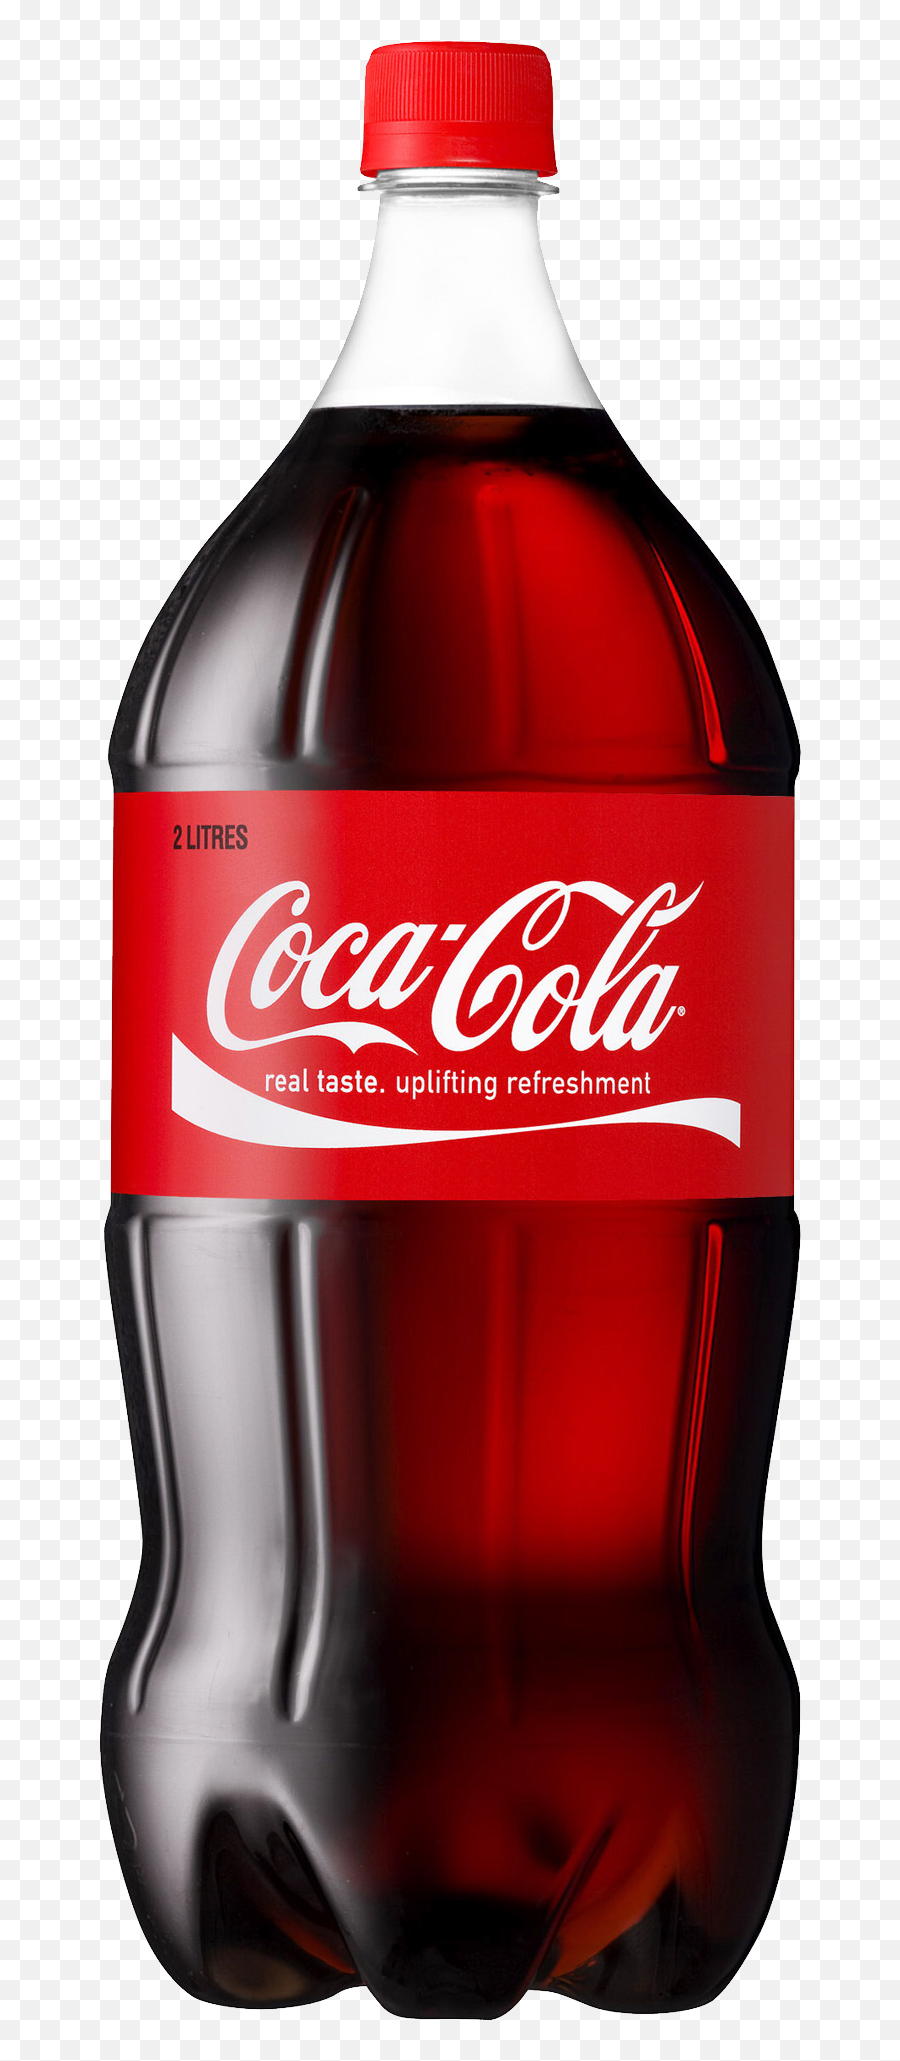 Coca Cola Bottle Png Image Emoji,Coca Cola Bottle Png